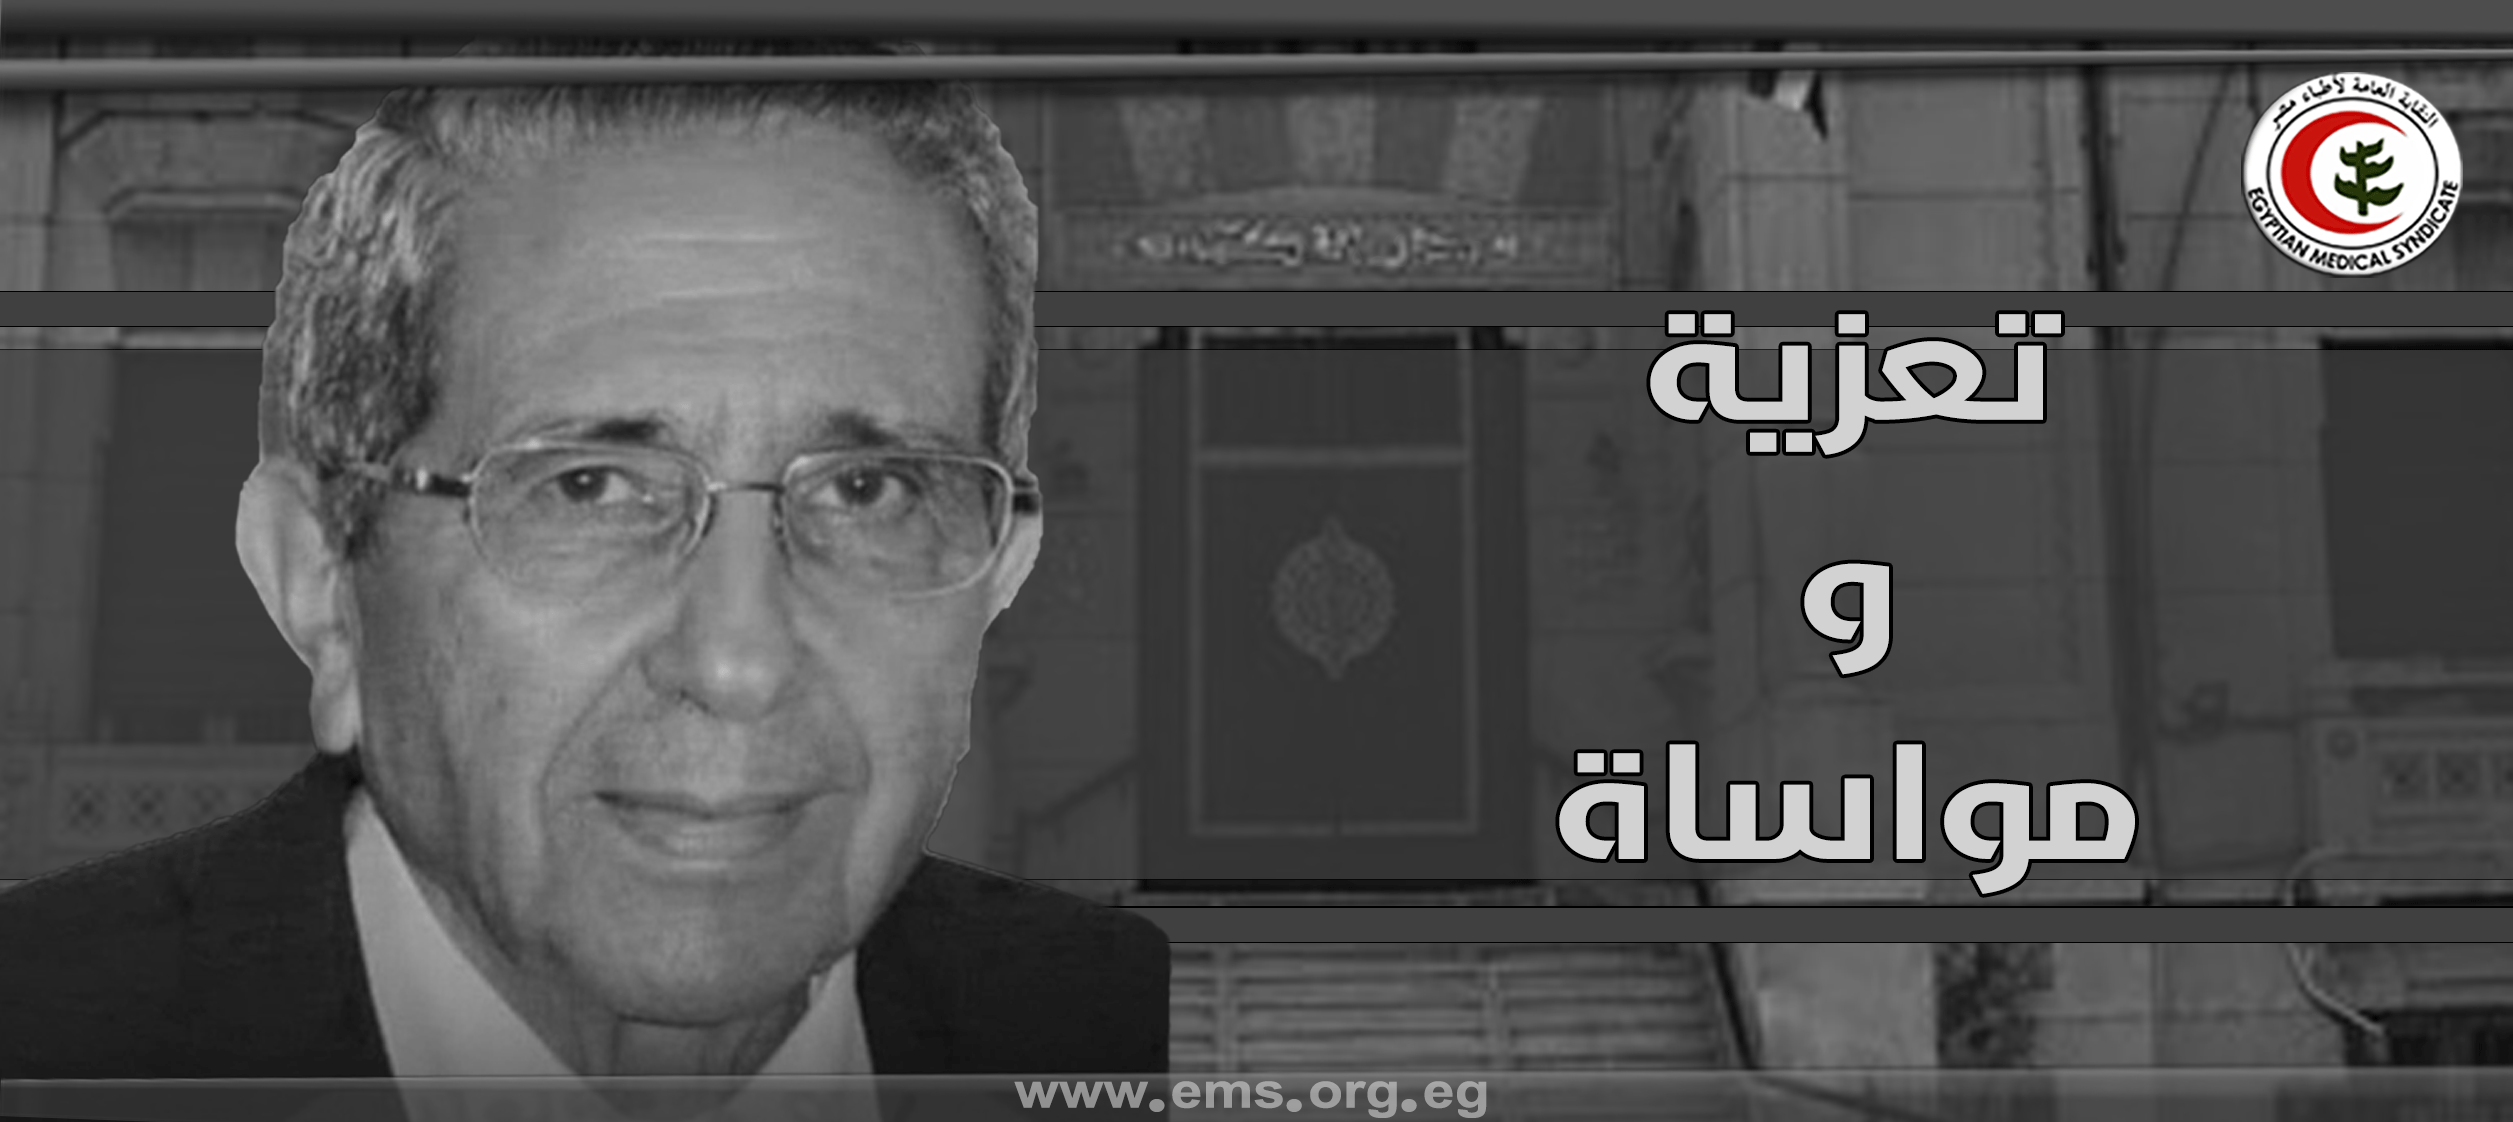 نقابة أطباء مصر تنعي ببالغ الآسي الأستاذ الدكتور مفيد سعيد